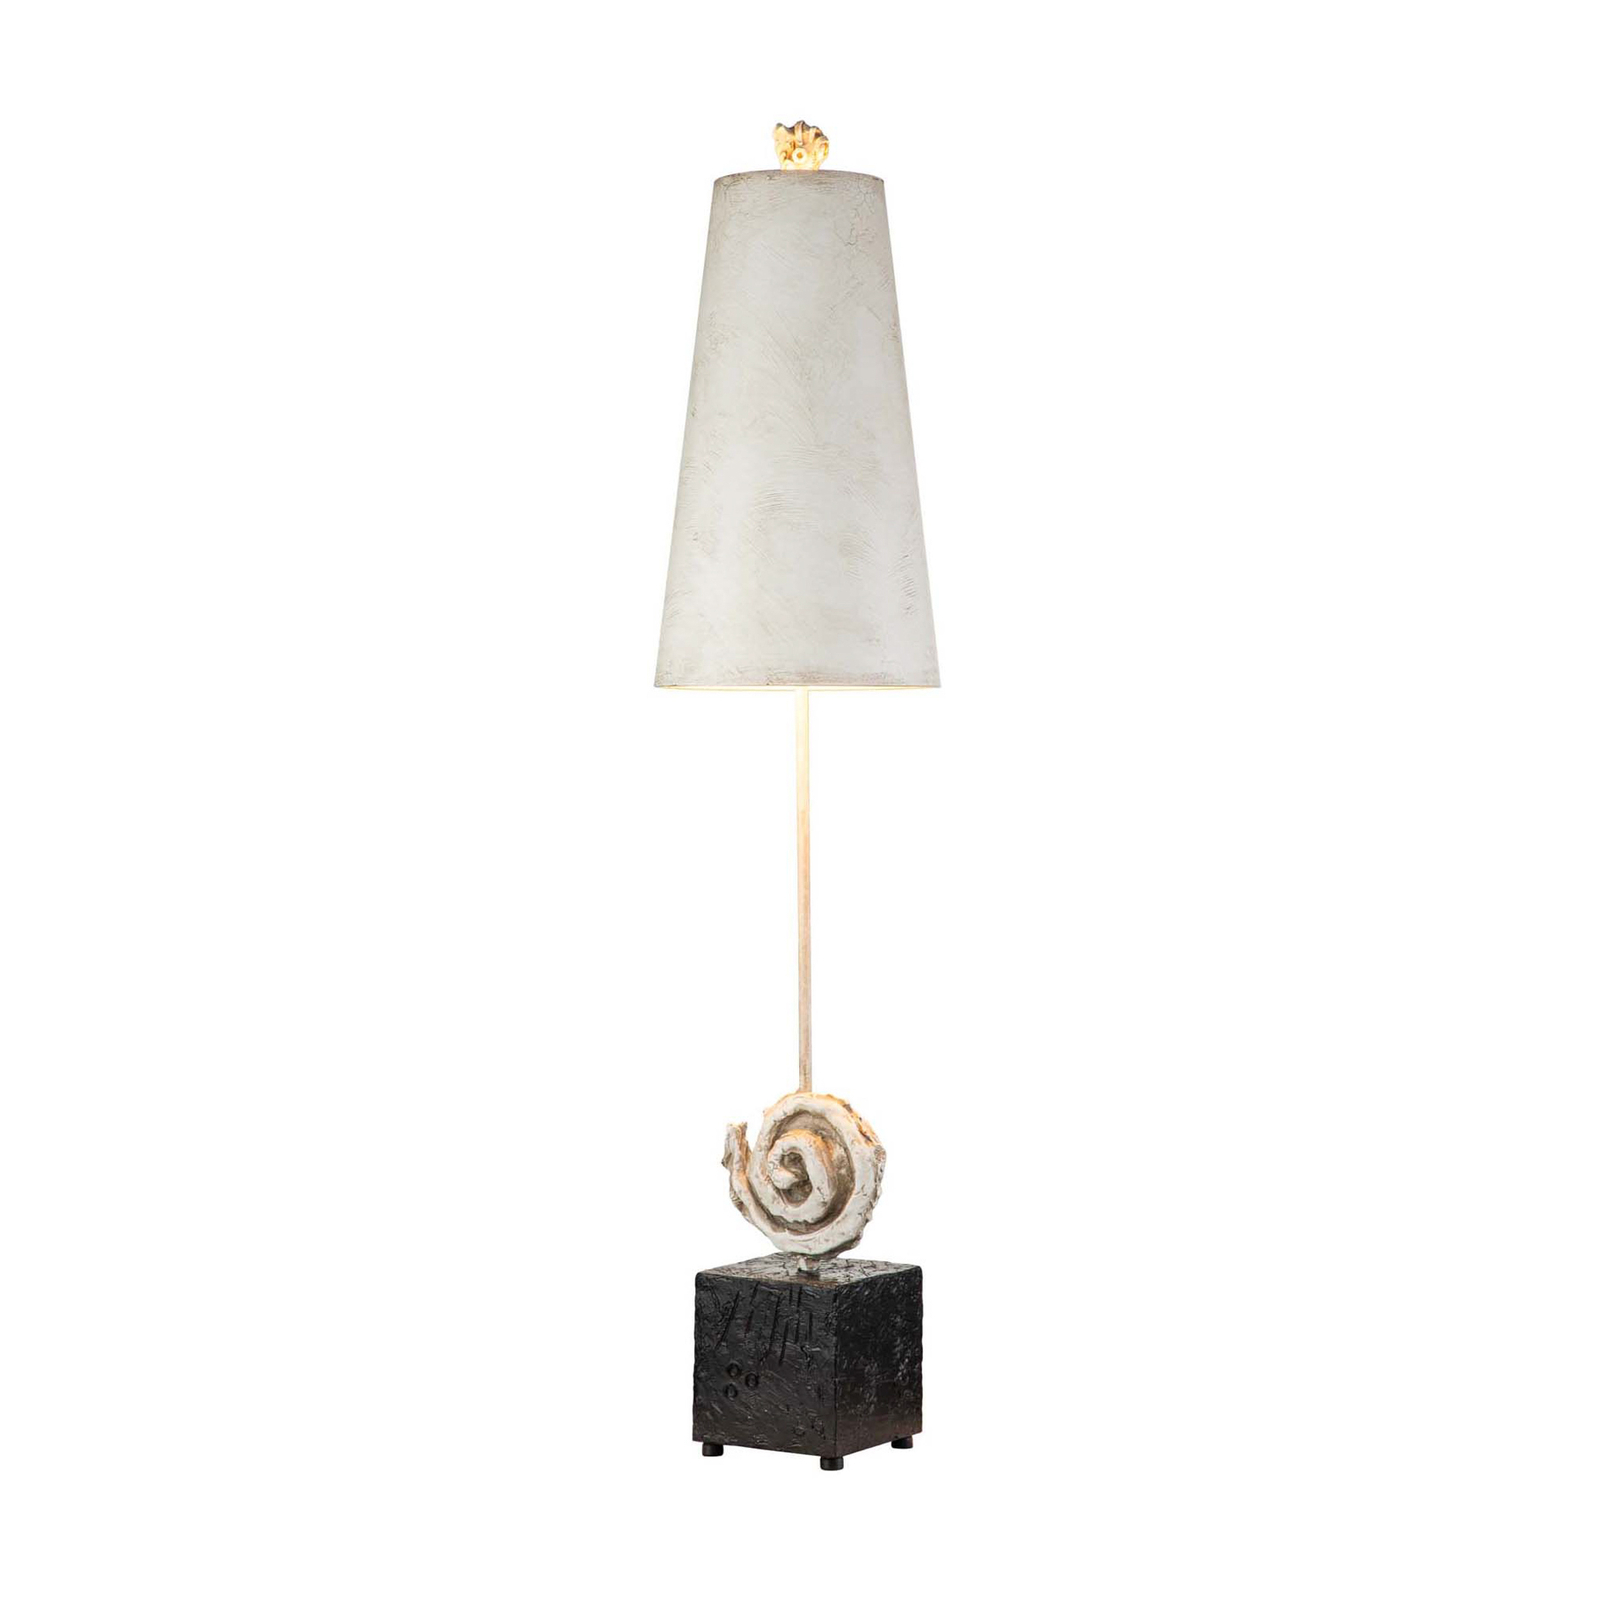 Lampa stołowa Swirl w kolorze antycznej bieli